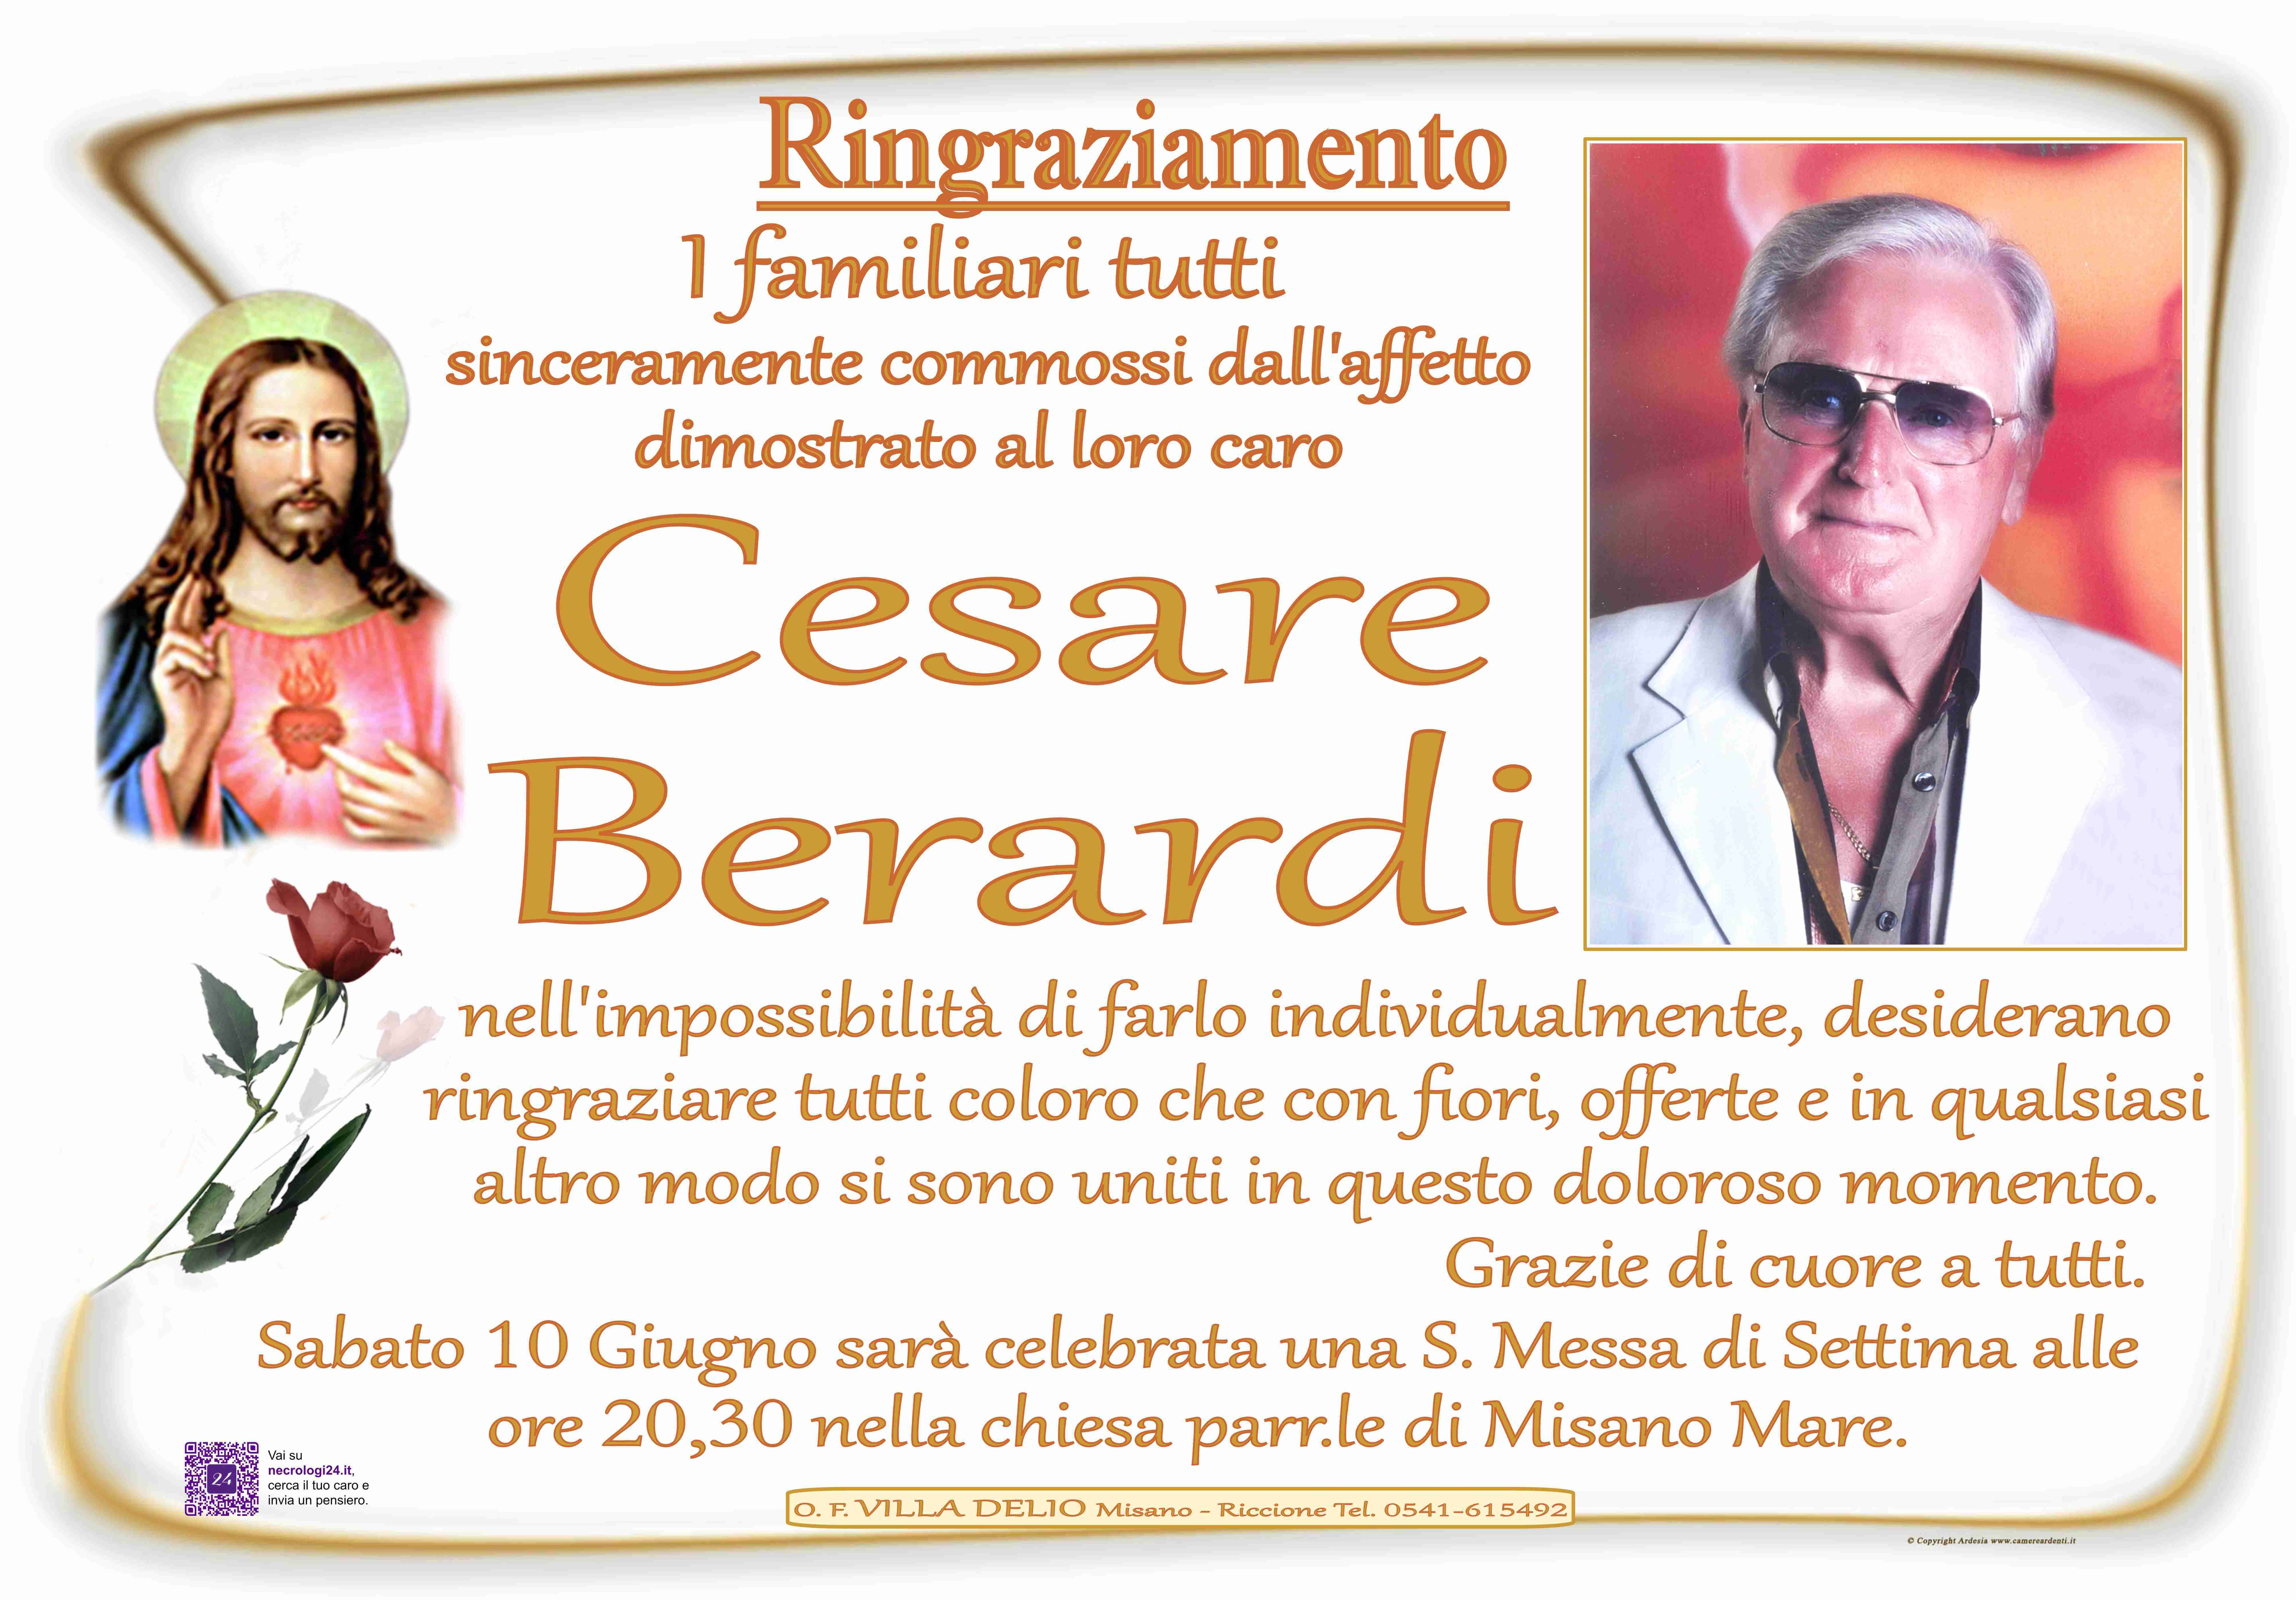 Cesare Berardi